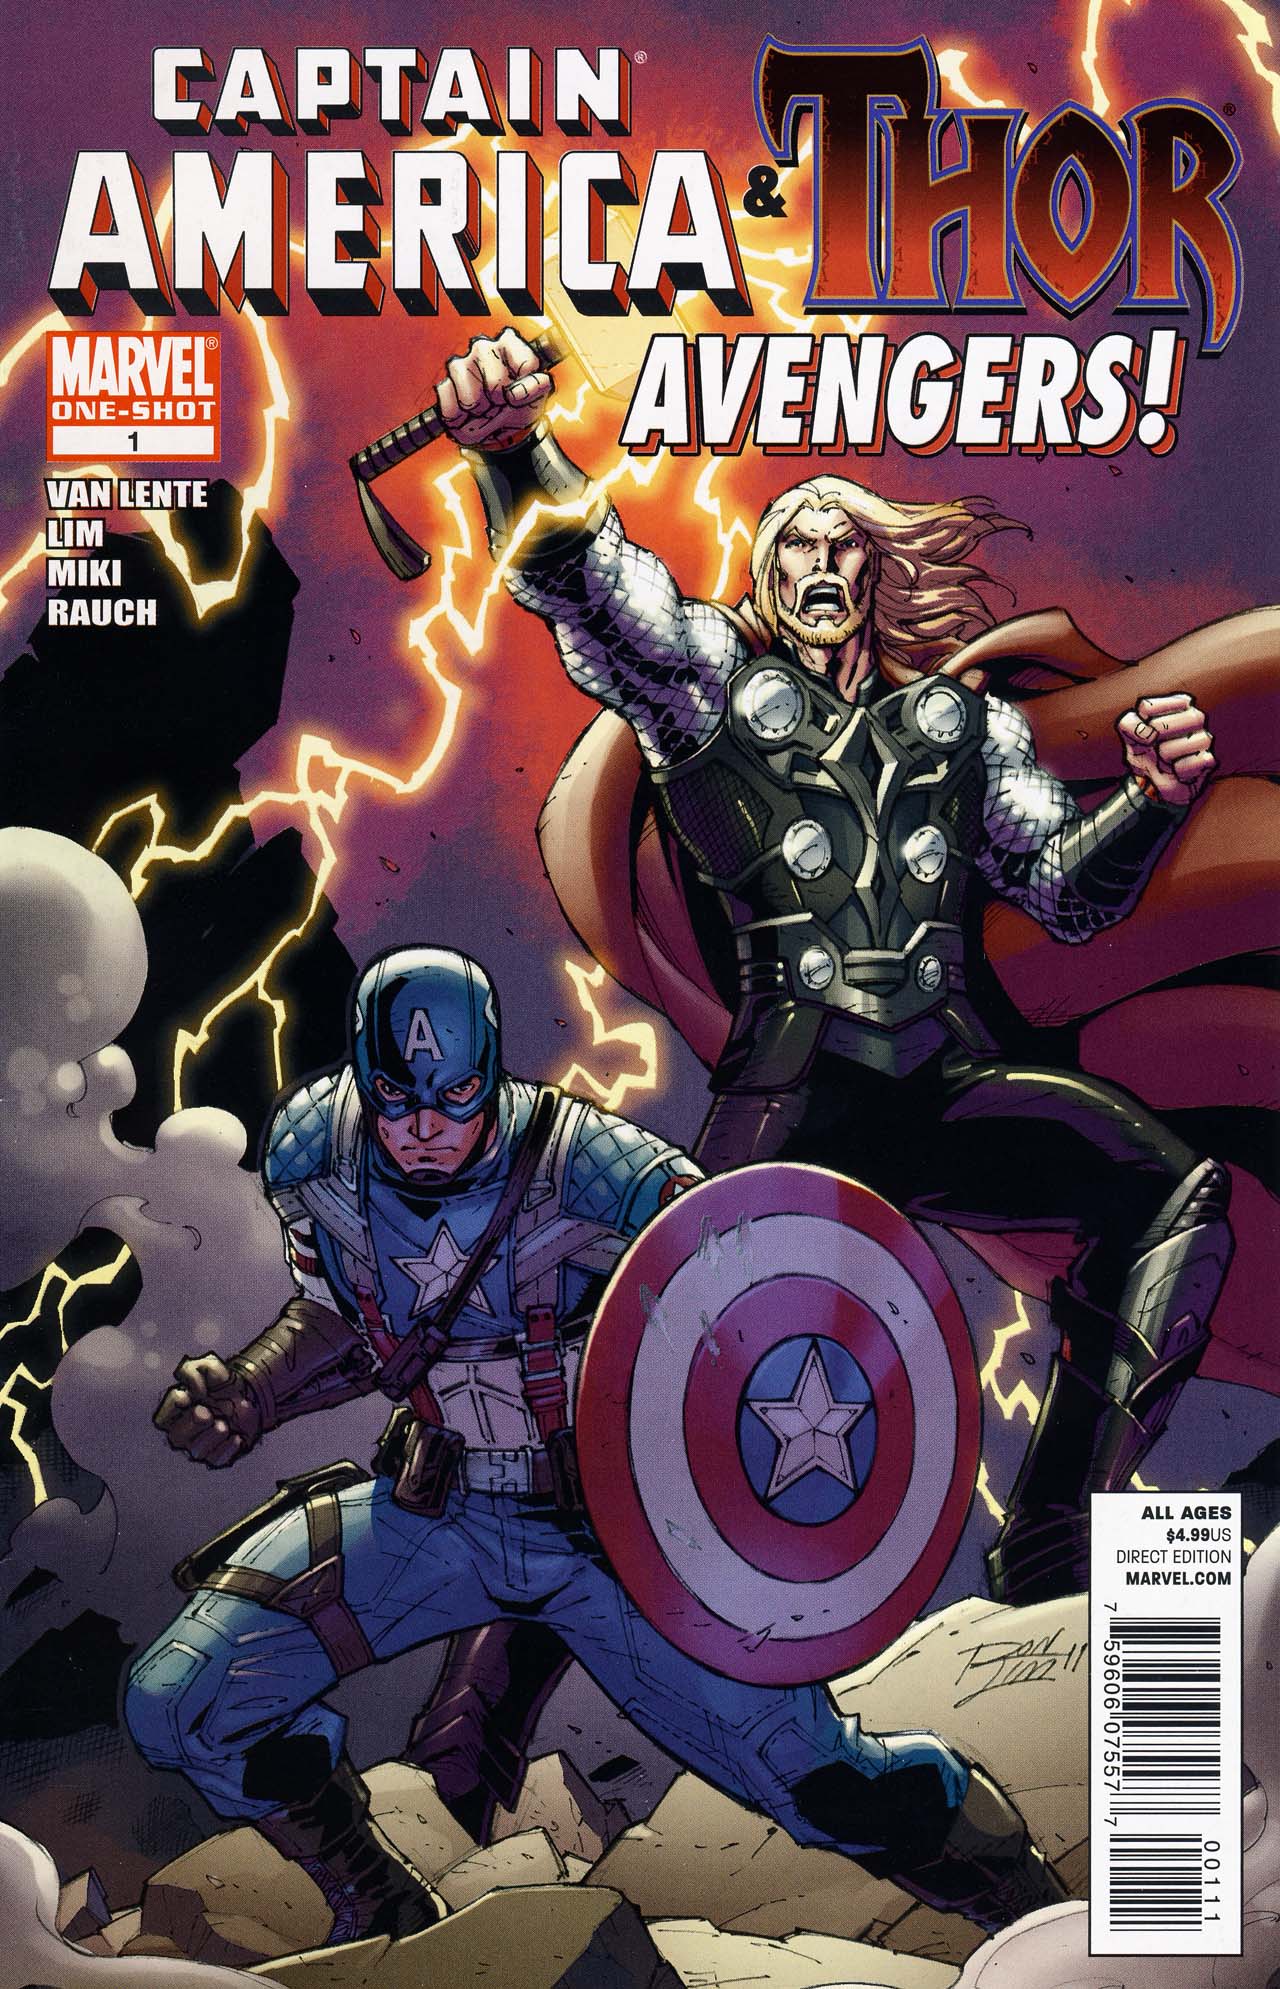 Read online Captain America & Thor: Avengers comic -  Issue # Full - 1